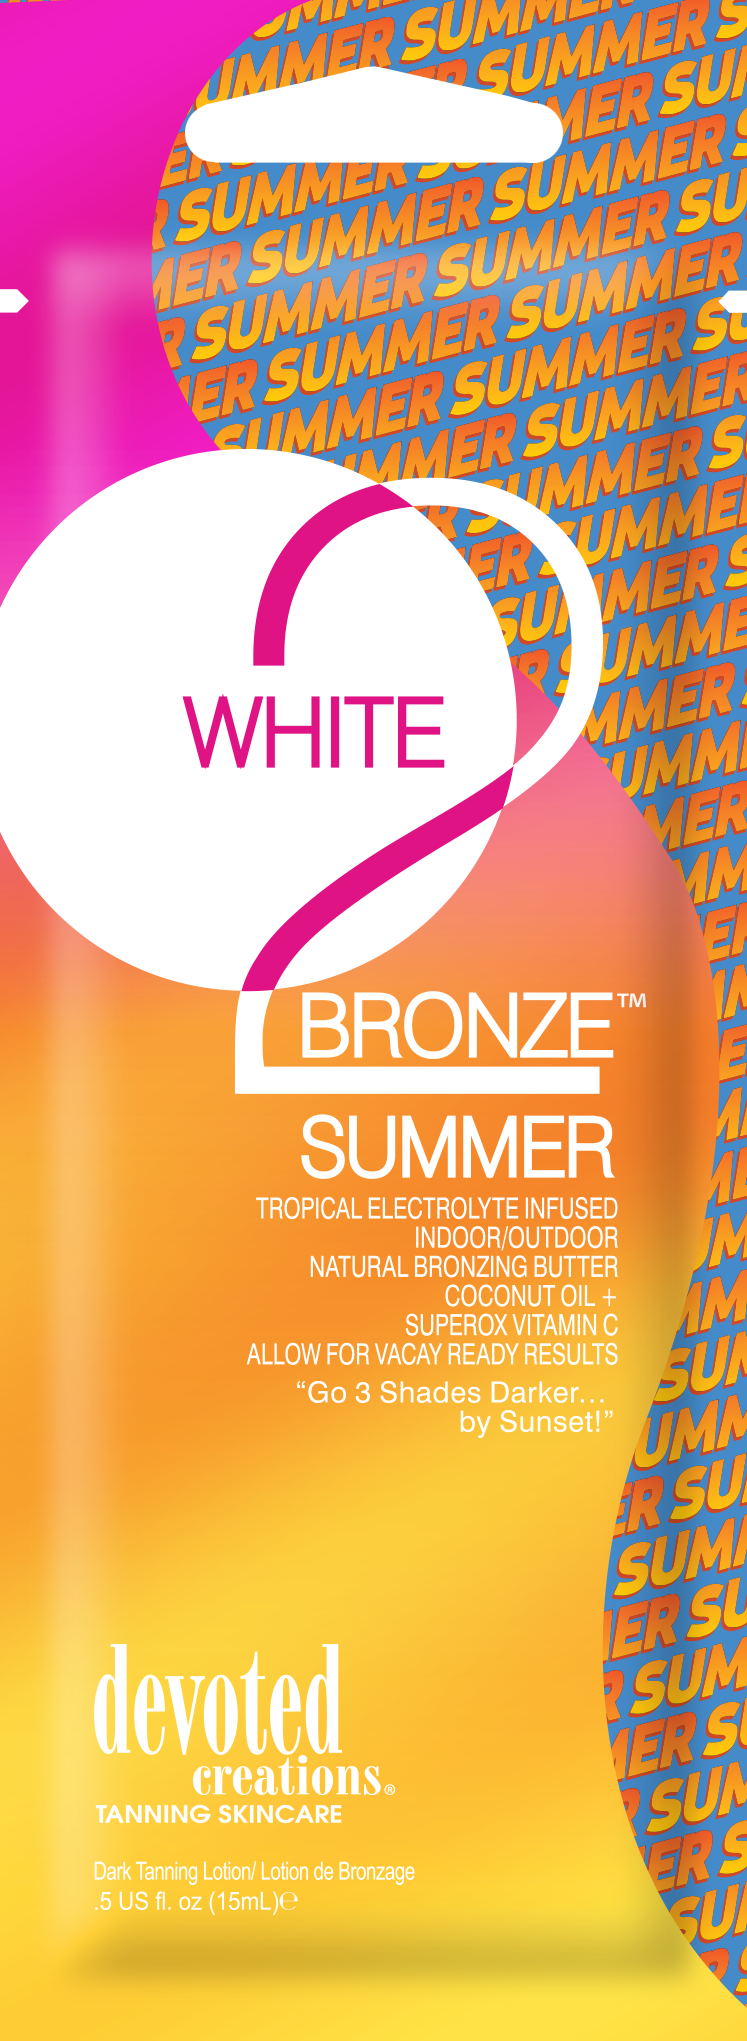 White 2 Bronze Summer